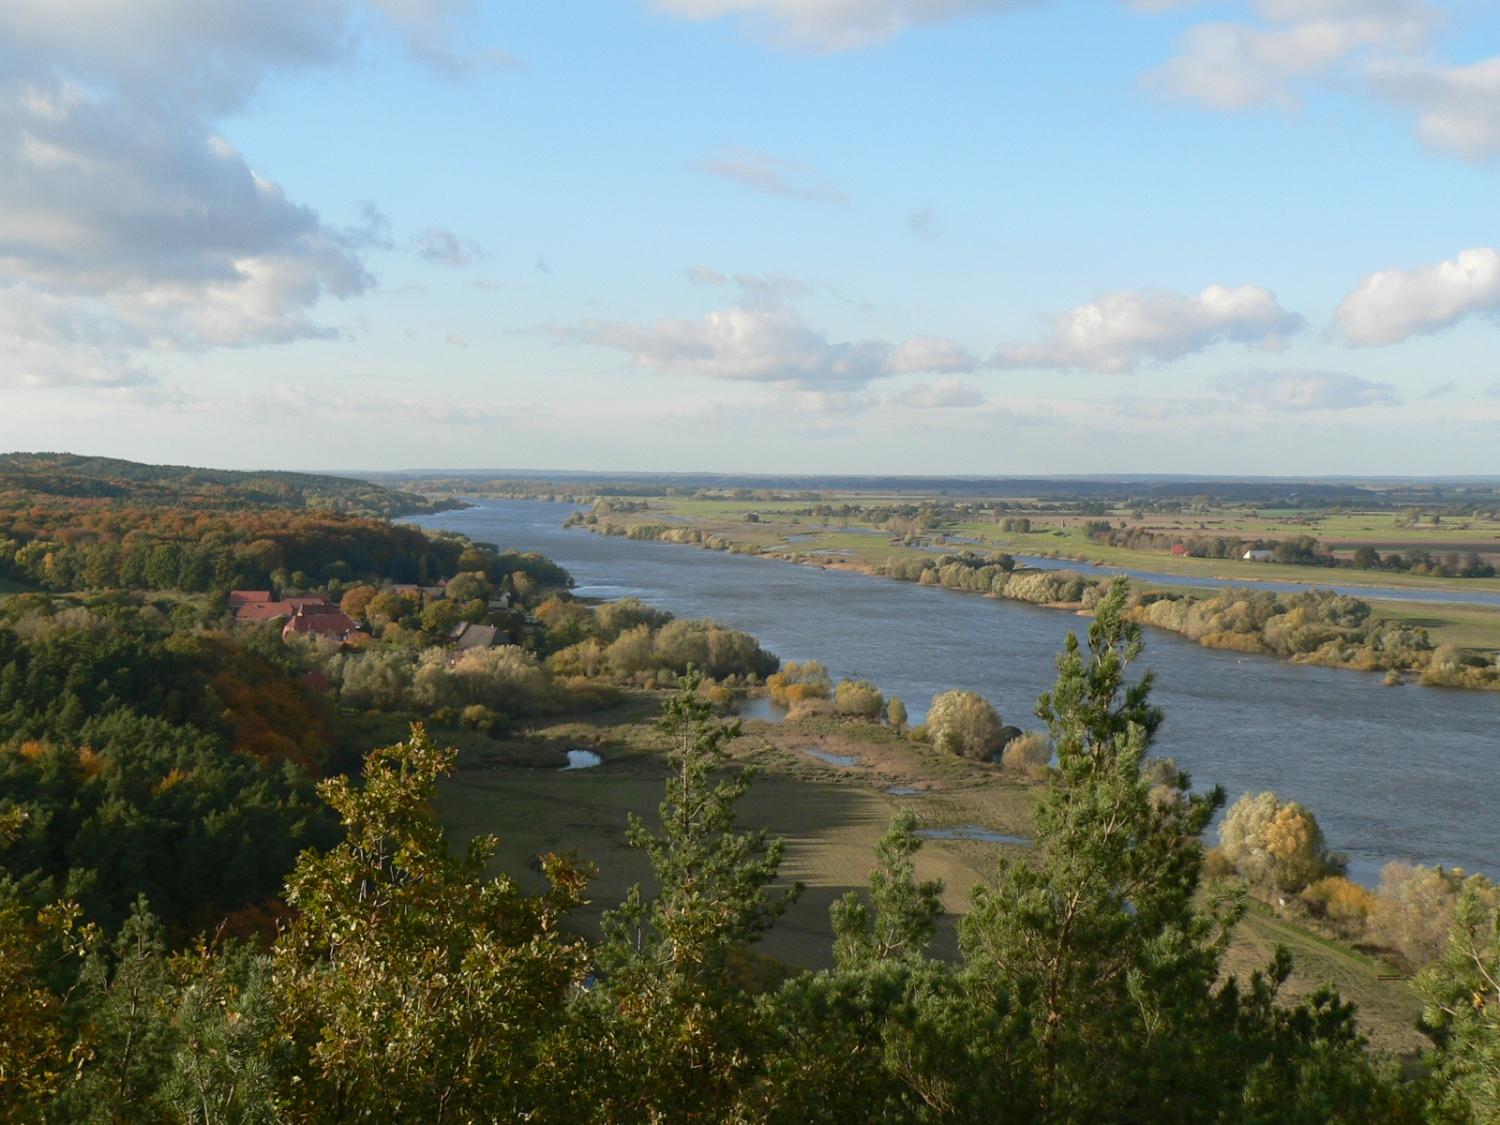 das Bild zeigt den Blick vom Aussichtsturm auf dem Kniepenberg, der höchsten Erhebung auf der anderen Elbseite, zeigt den Blick über die Elbe. Gerade aus dem Bild, ganz rechts, liegt der Privelacker Paradiesgarten.